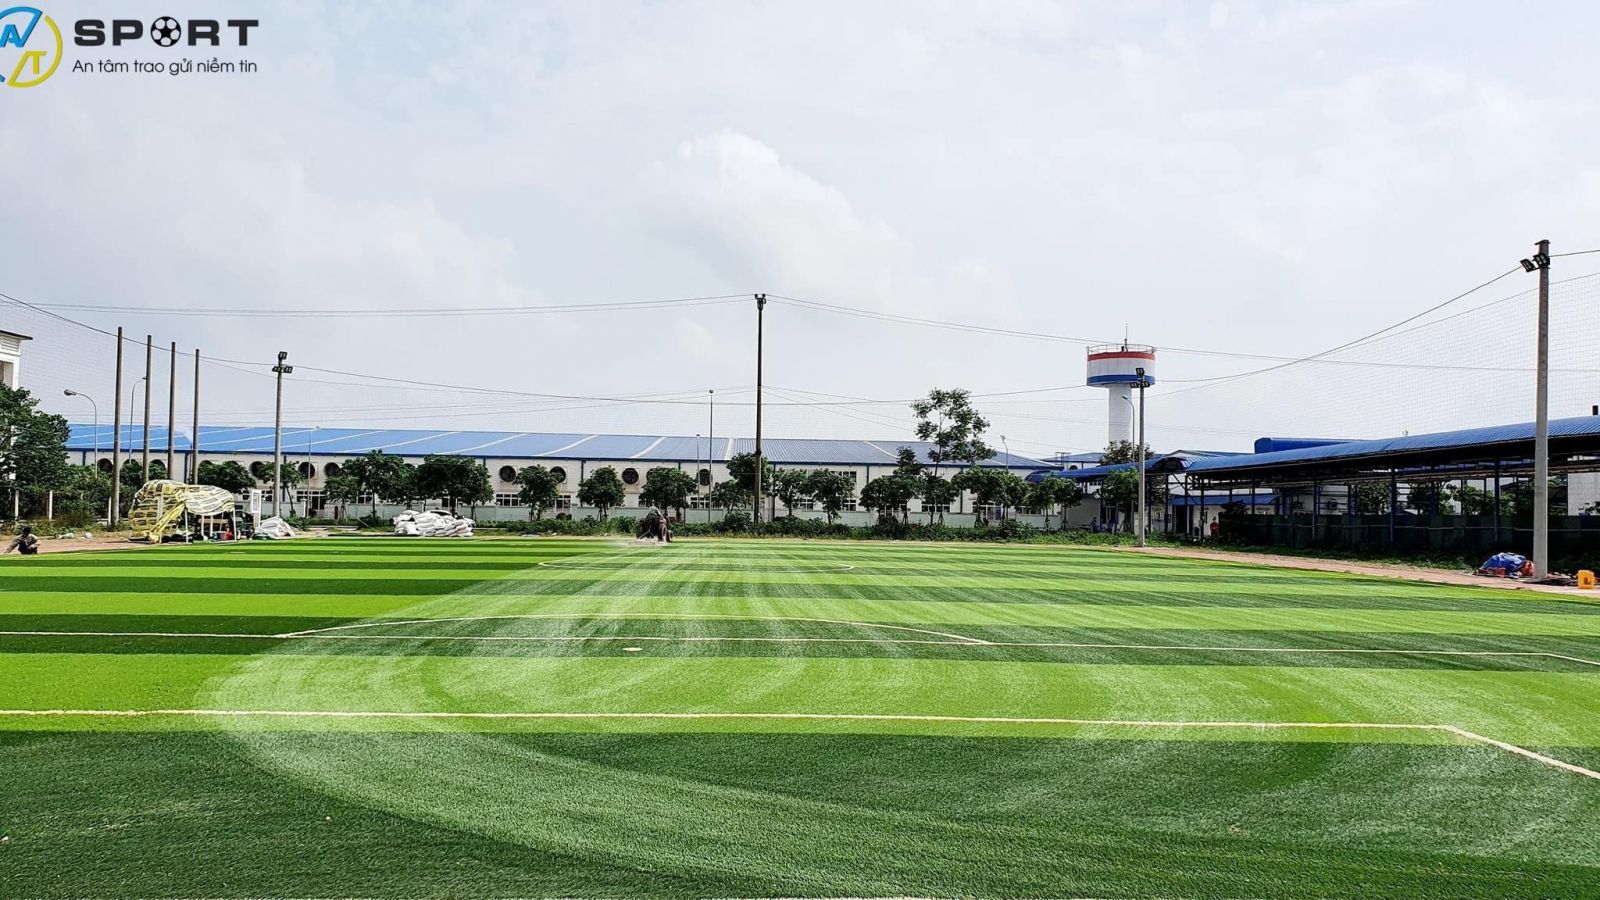 Thi công cỏ nhân tạo sân bóng đá tại Hà Tĩnh